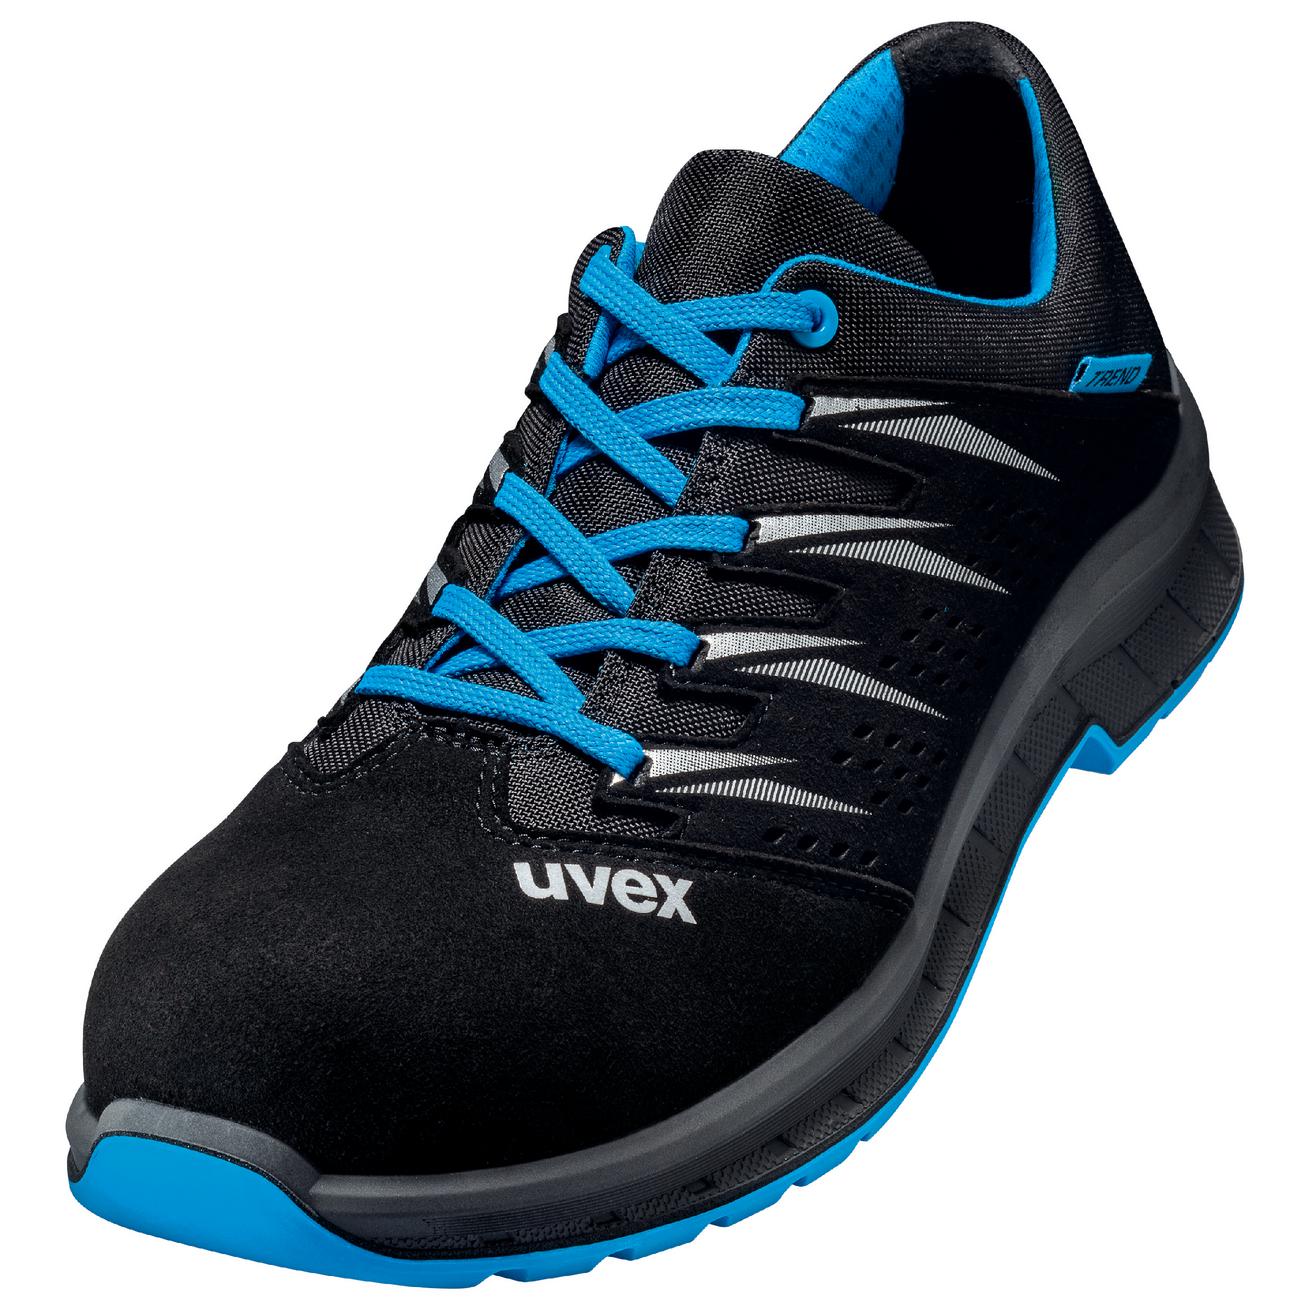 Perf. polobotka obuv uvex 2 trend, šíře 11, S1 SRC, černá/modrá 6937 Velikost: 49, Kód produktu: 6937849